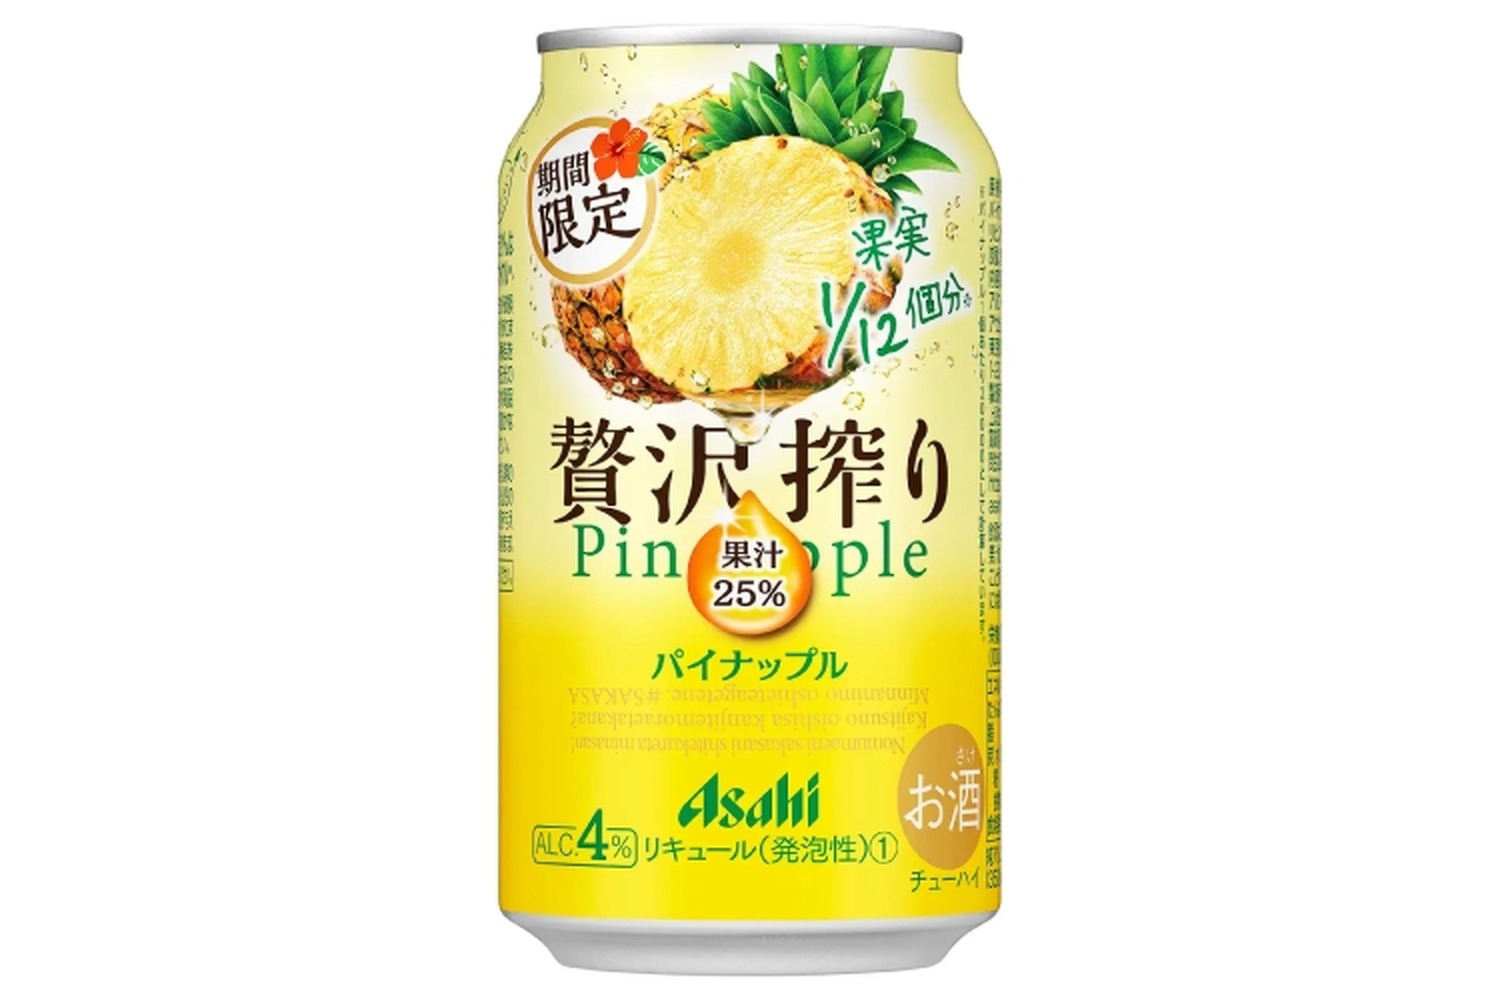 果汁25%使用！「アサヒ 贅沢搾り期間限定パイナップル」が発売